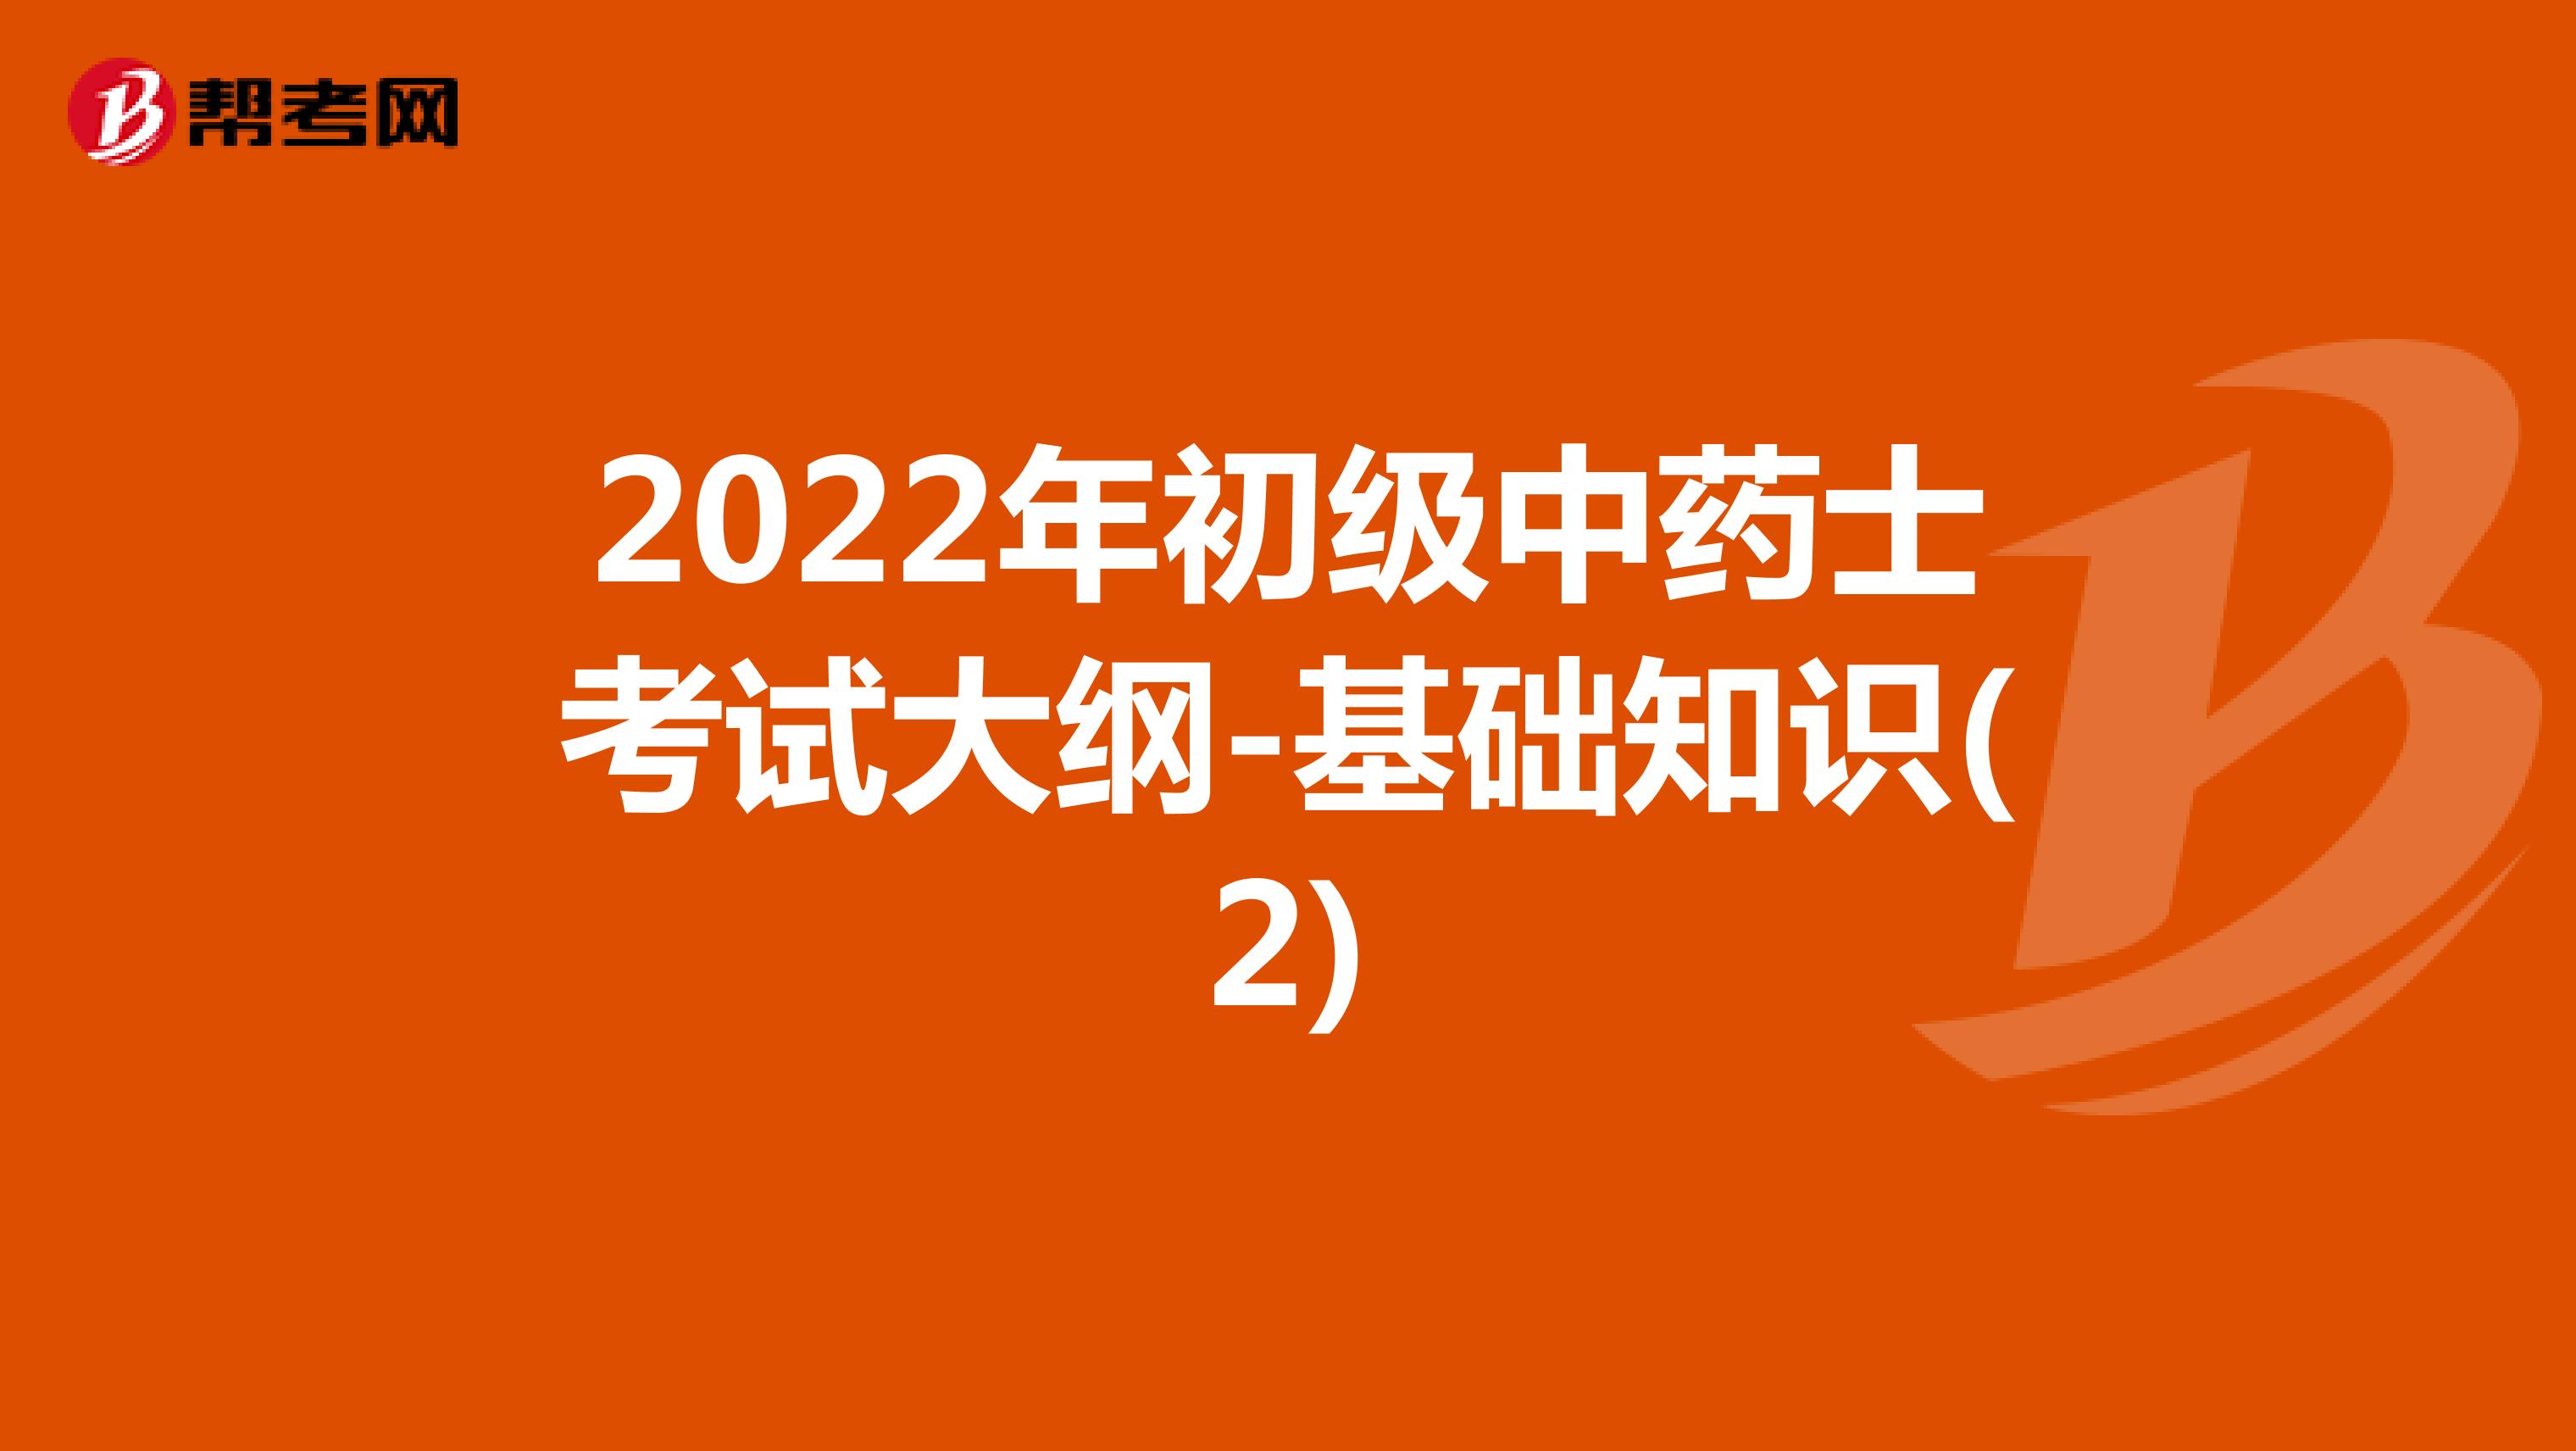 2022年初级中药士考试大纲-基础知识(2)